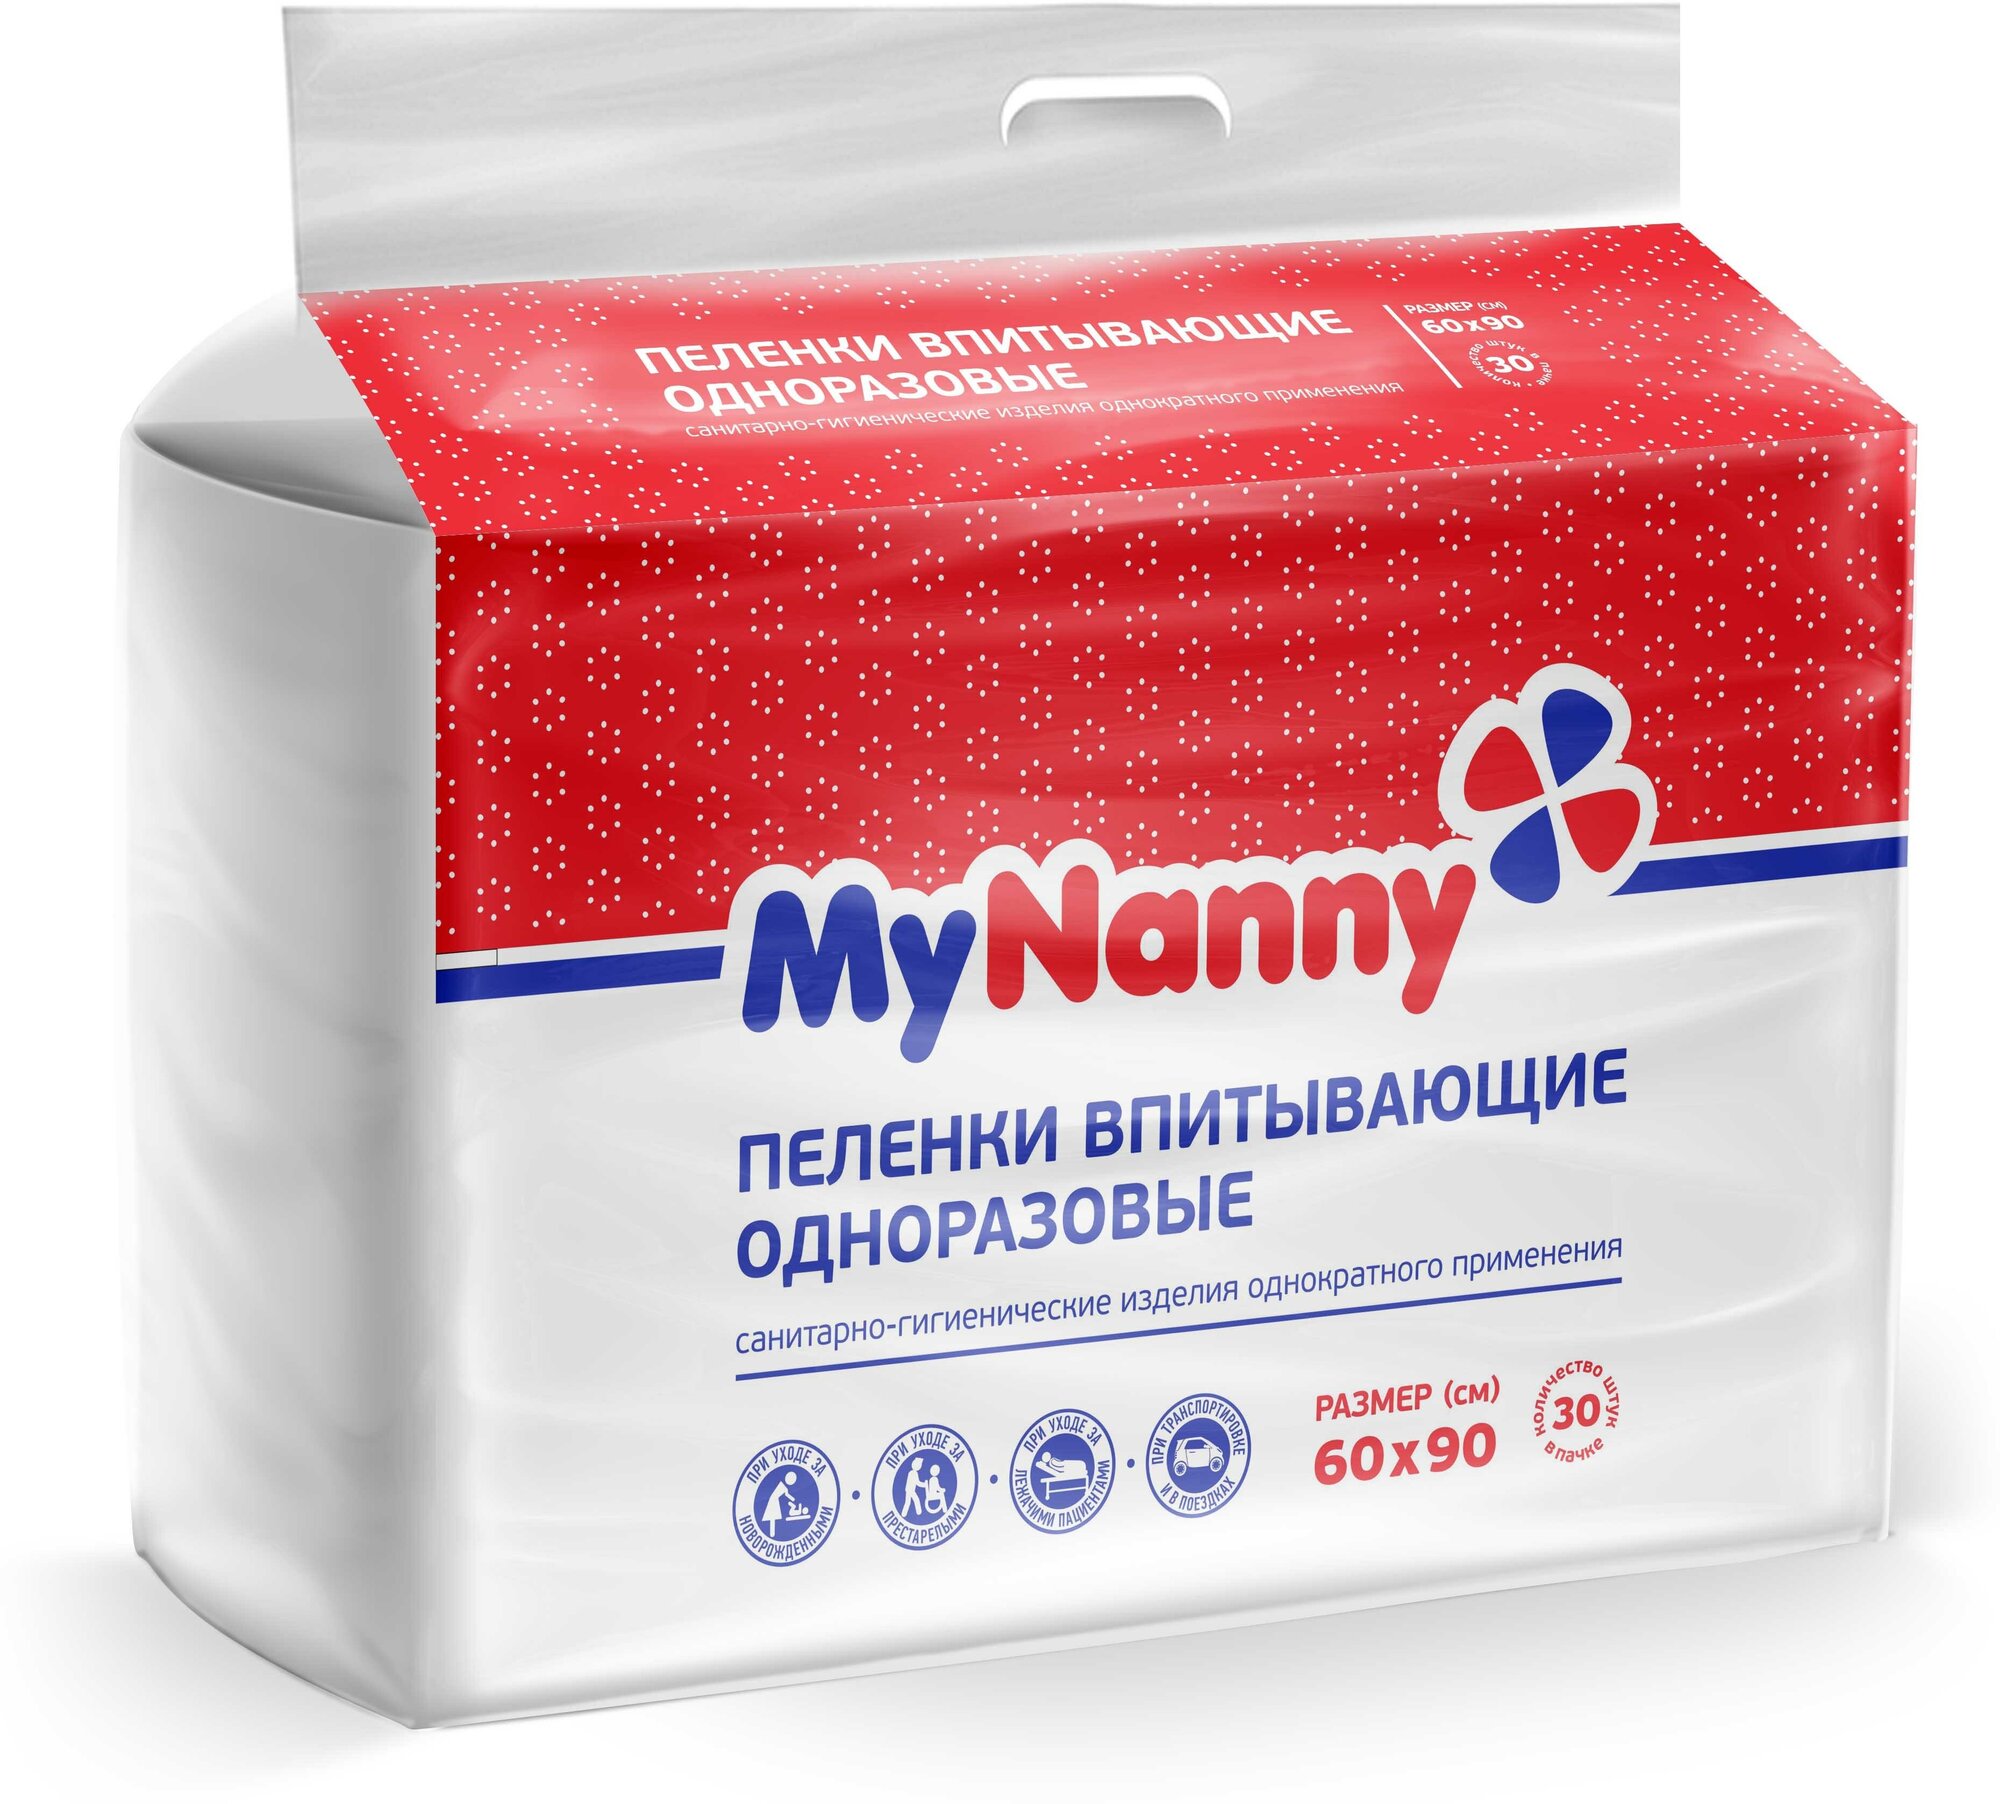 MyNanny Пеленки впитывающие одноразовые "Медмил" Эконом 60 Х 90 см. упаковка 30 штук